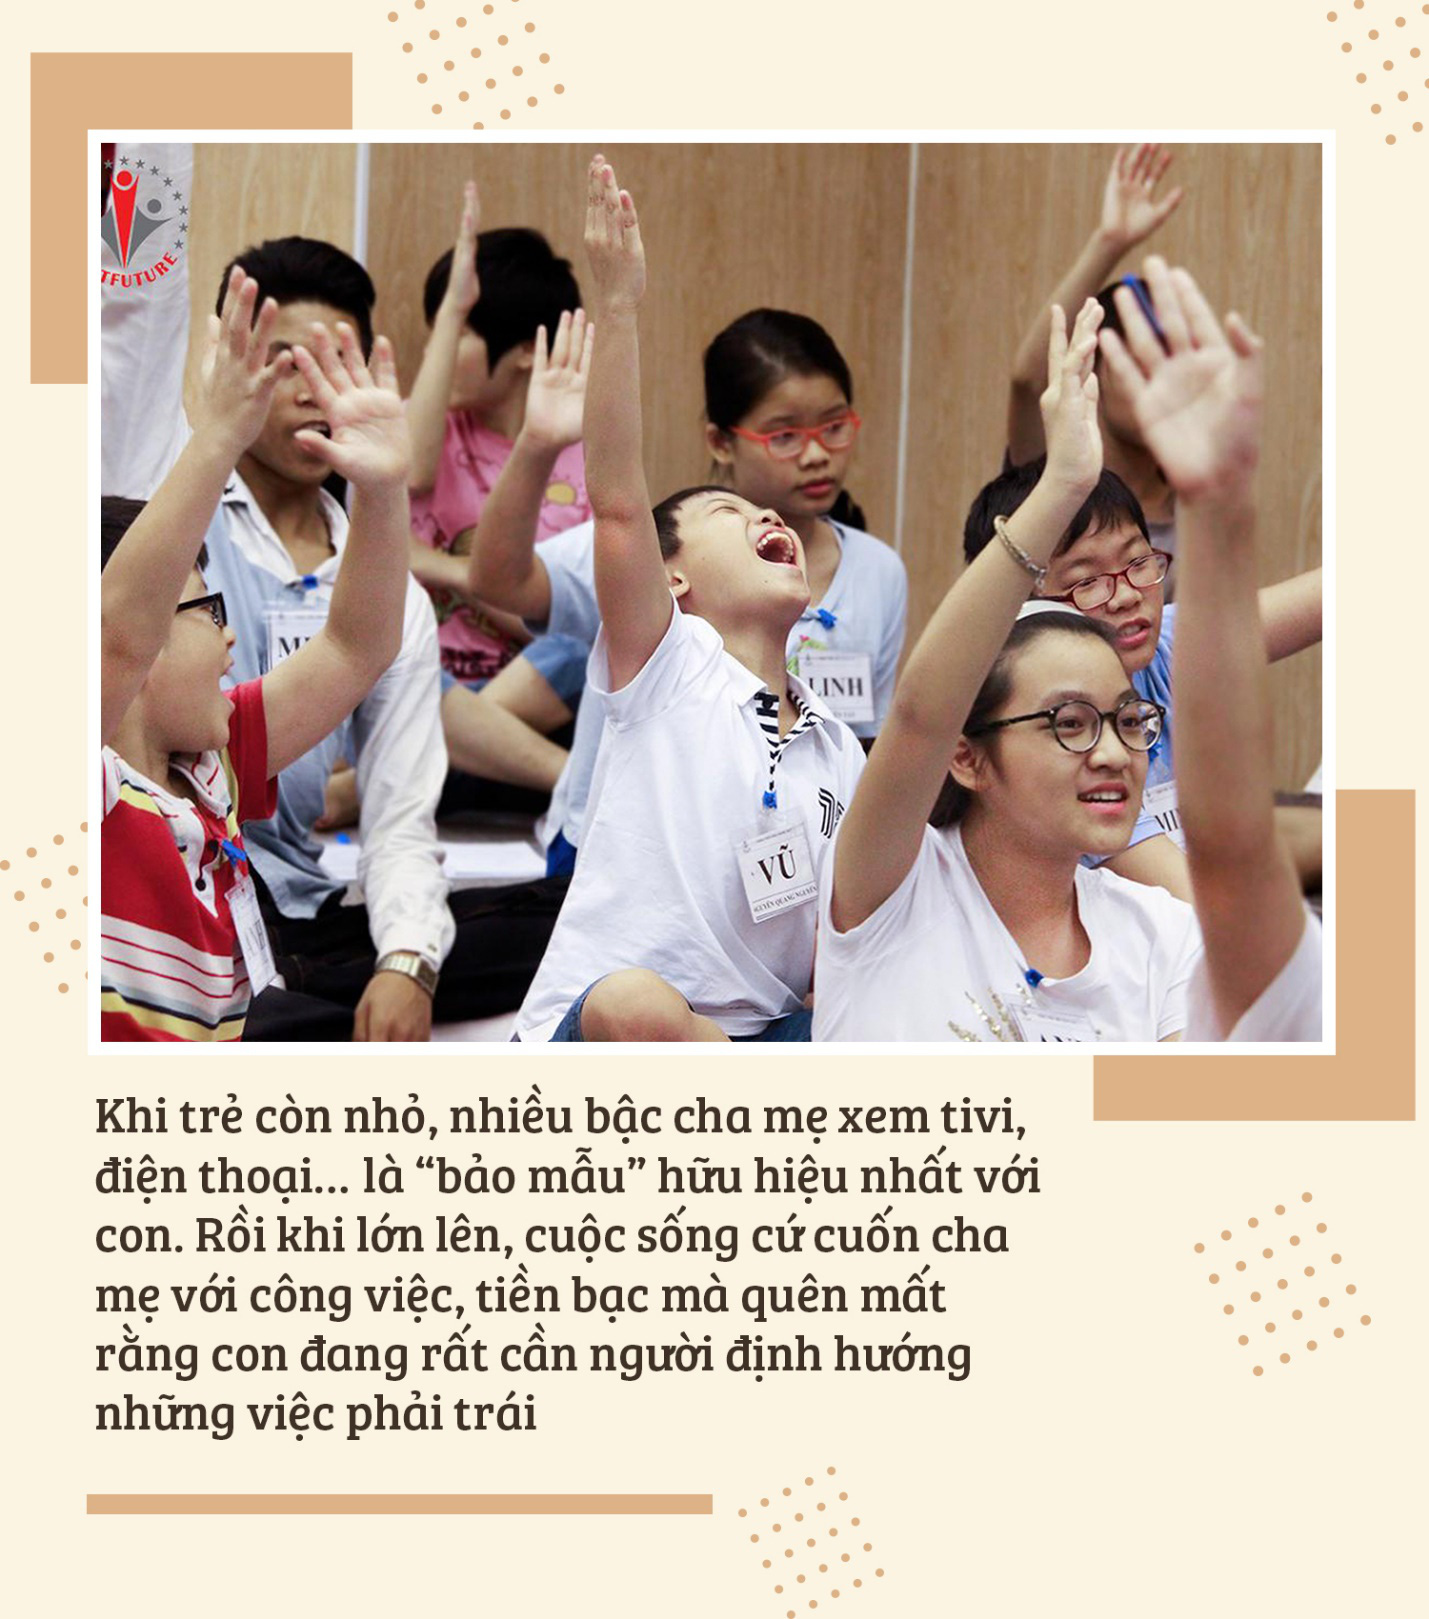 Hành trình nuôi dưỡng những đứa trẻ thành công và hạnh phúc ở ngôi trường đặc biệt - Ảnh 3.